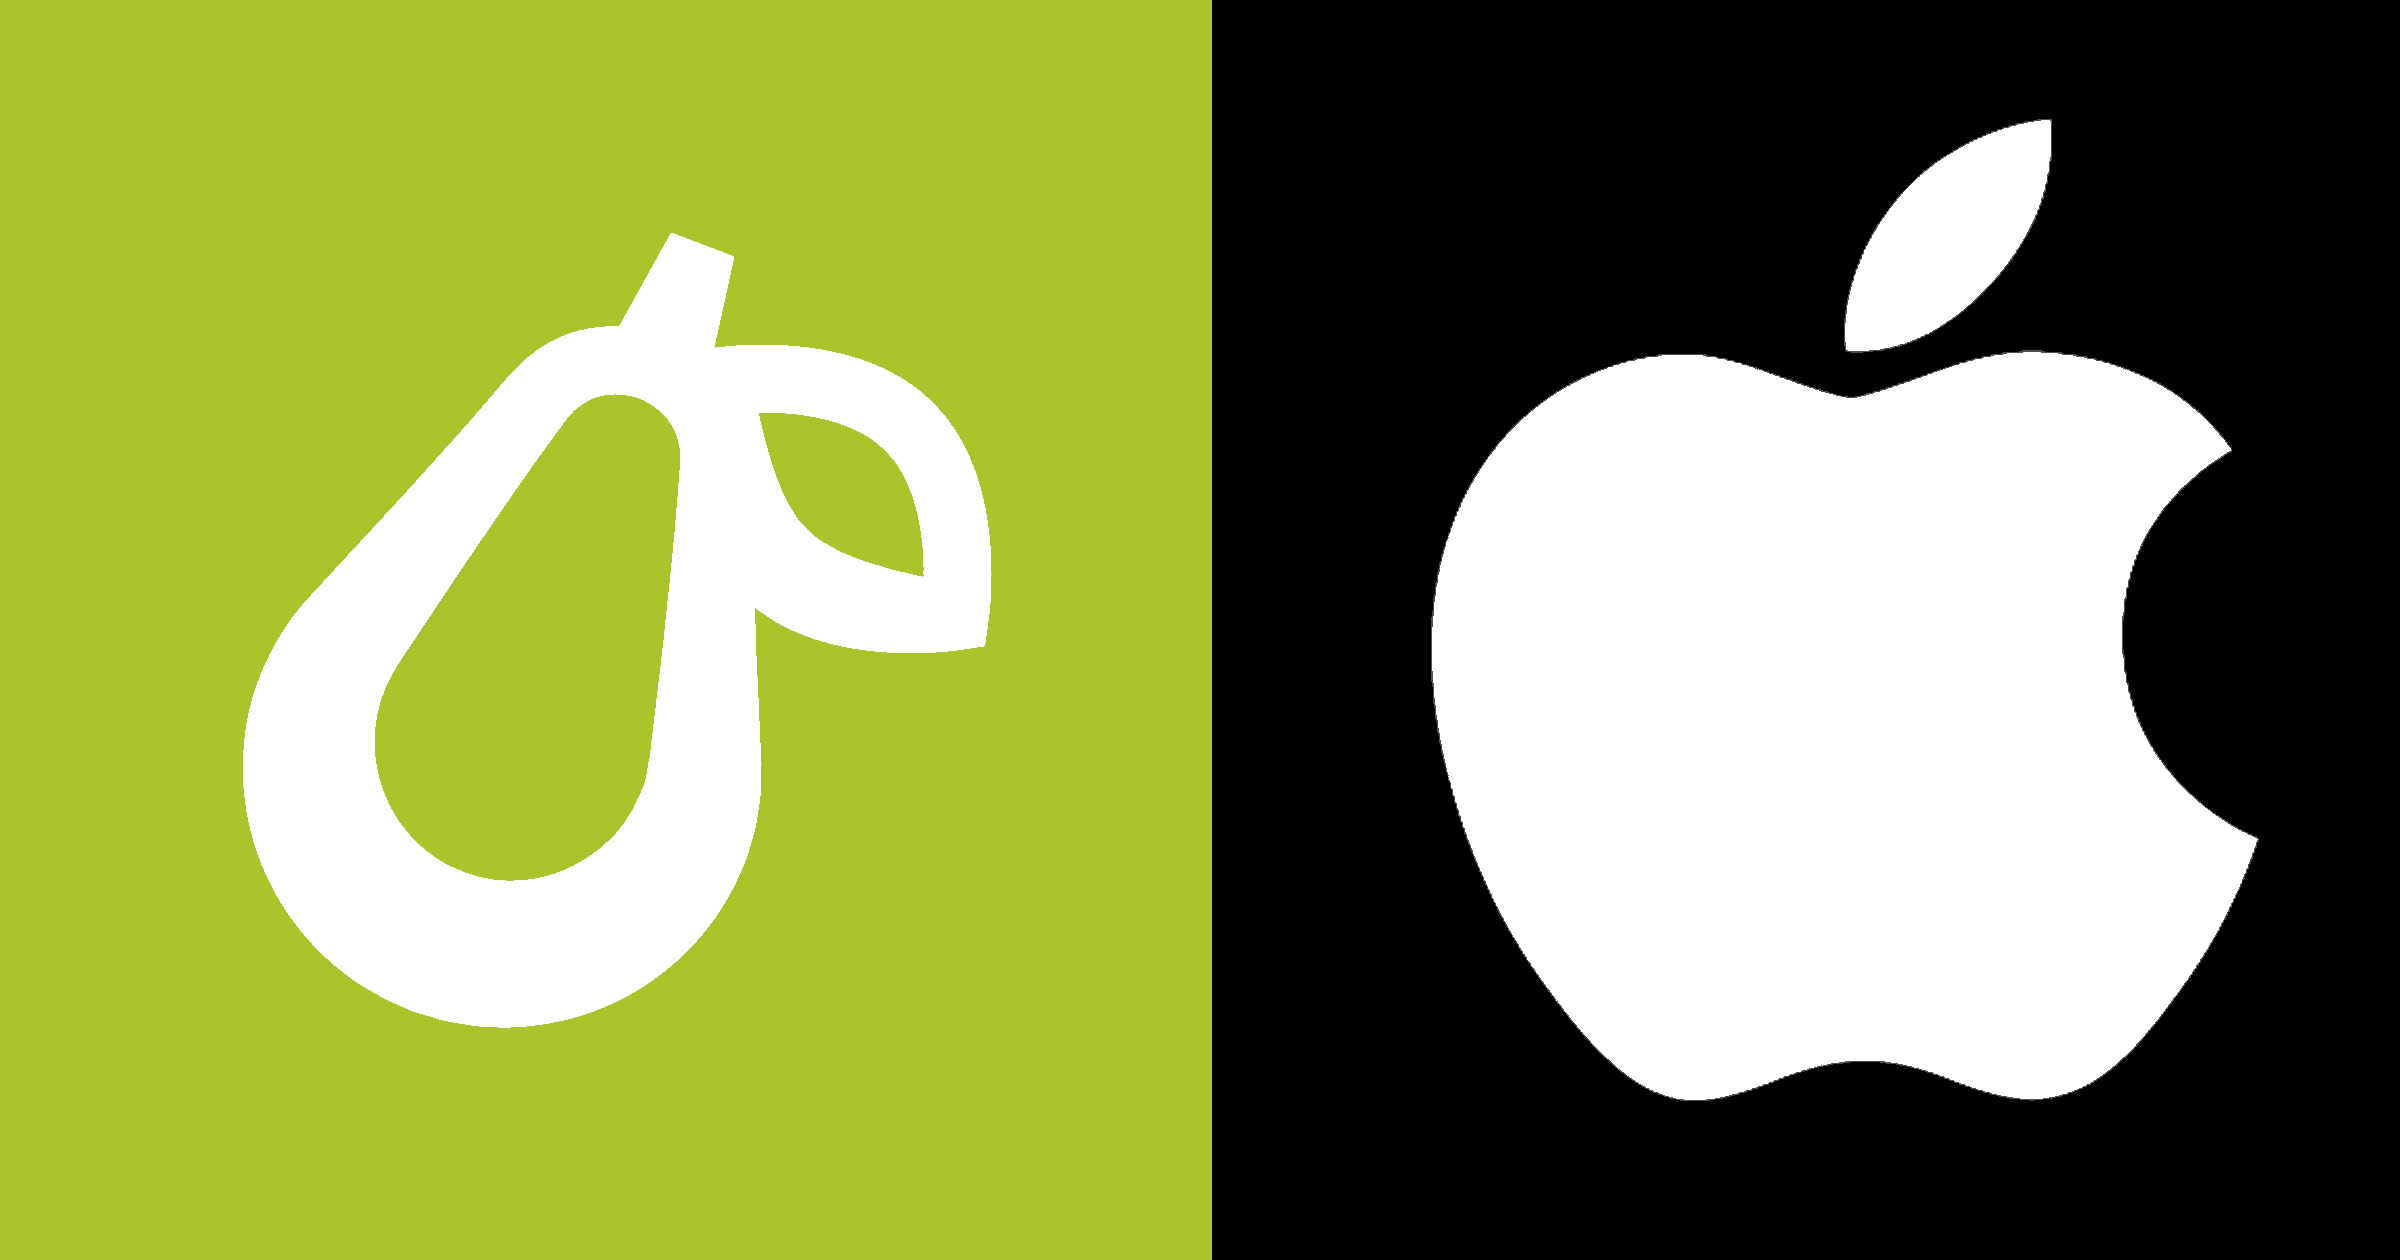 apple pear logo